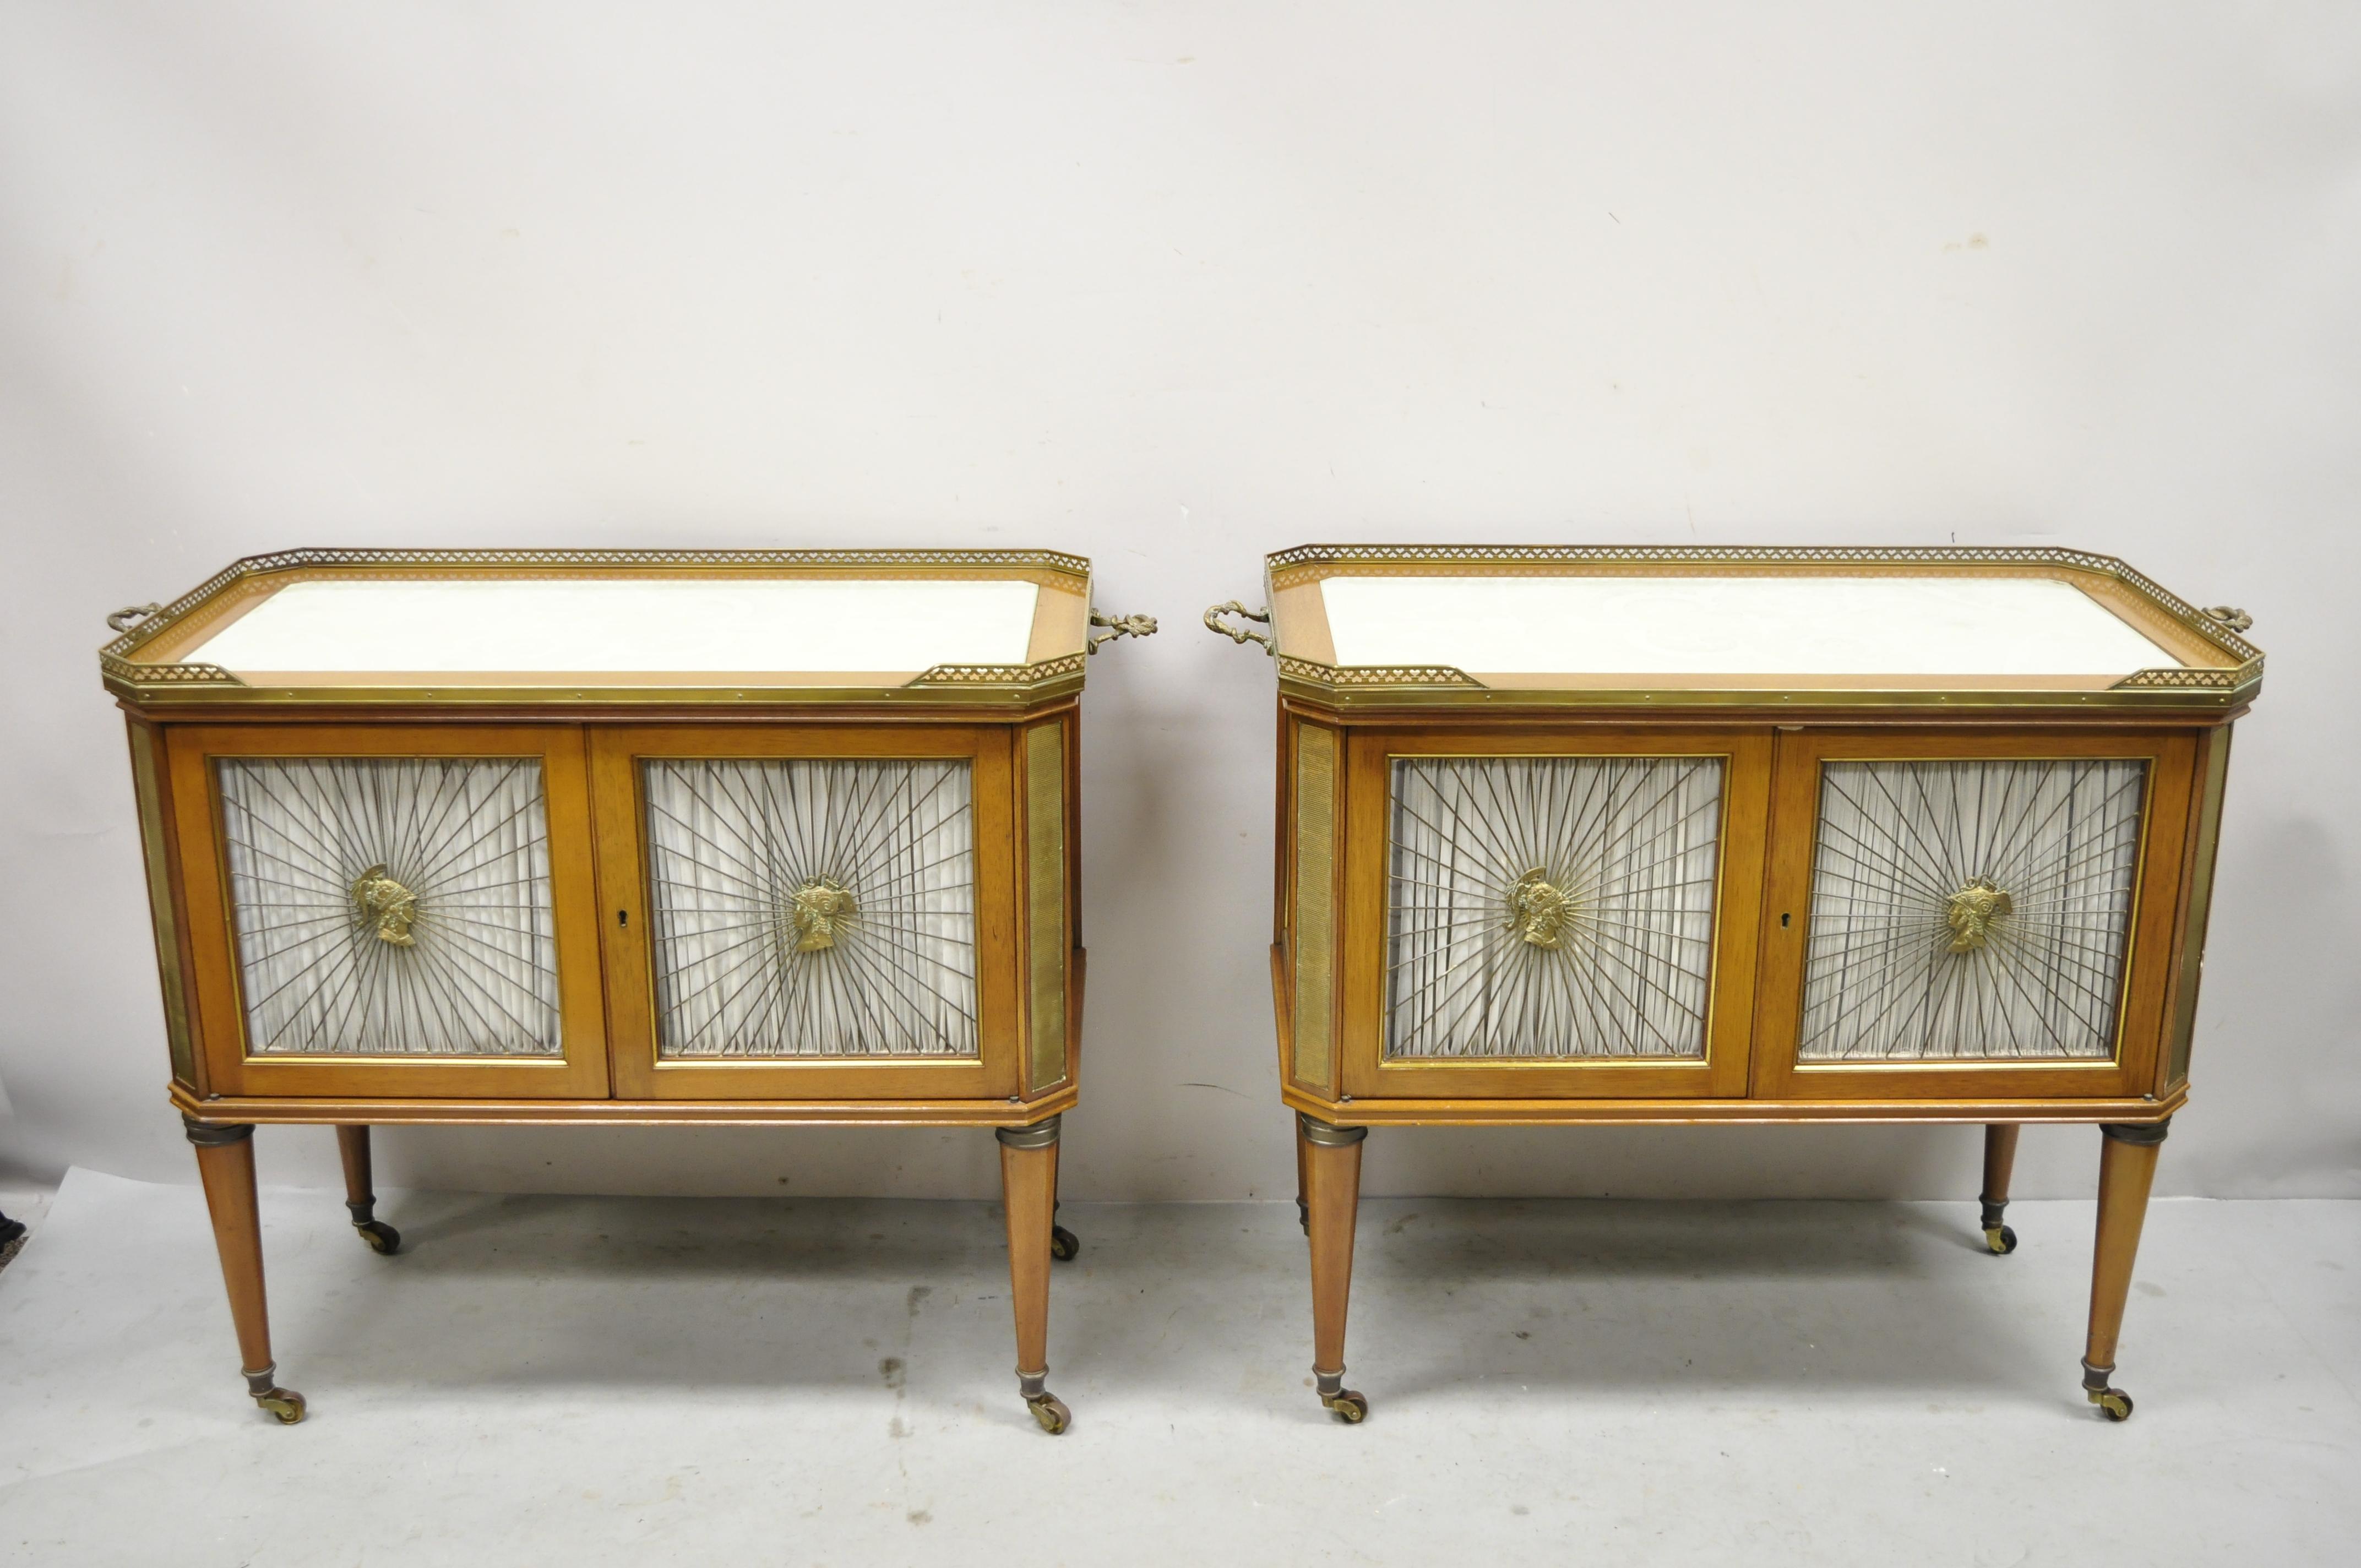 Vintage Französisch Louis XVI neoklassischen Regency-Stil Mahagoni Server Schrank Tabellen - ein Paar. Artikel mit Bronzebeschlägen und Galerie, Soldatenbüsten an den Türgittern, eingelassene Glasplatten mit Rollwerk, Messingrollen, verzierte